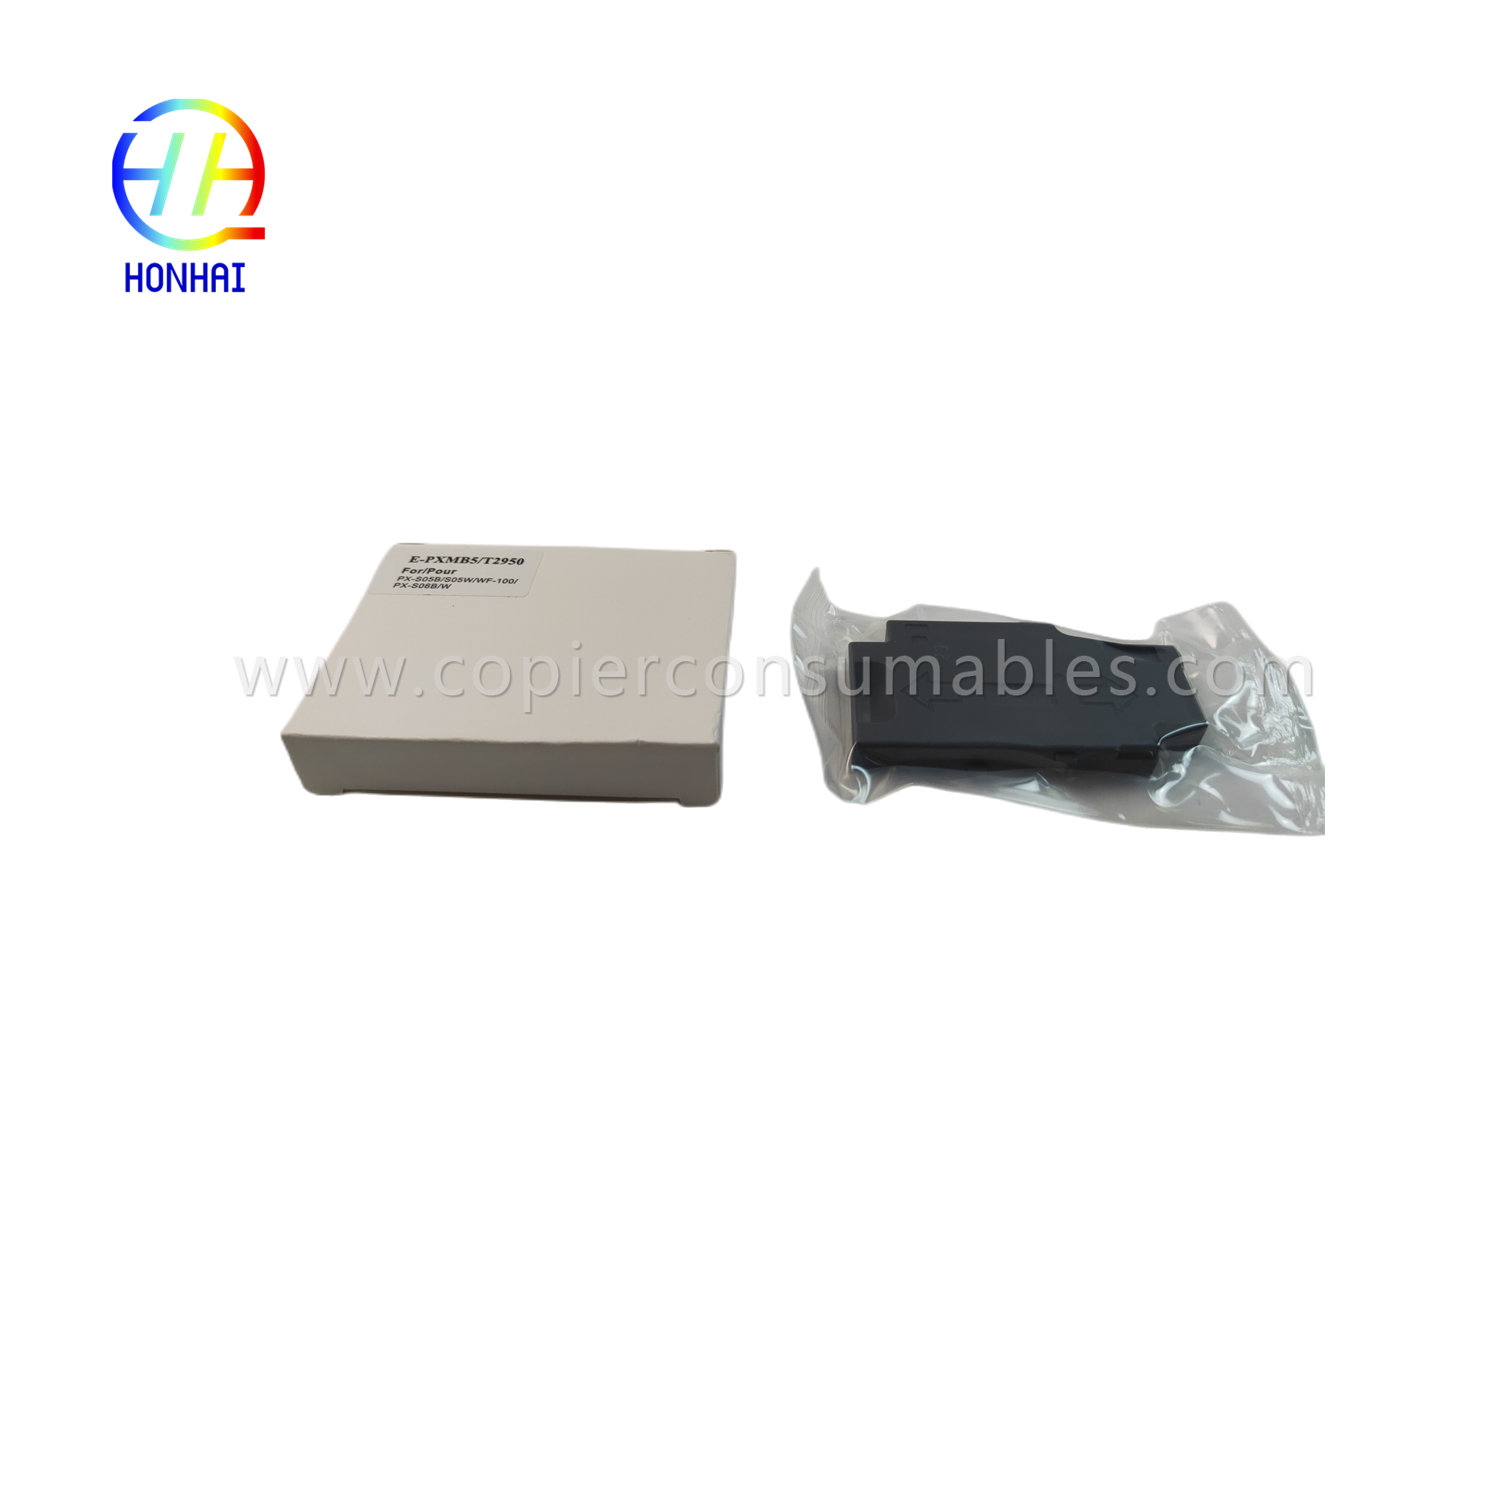 एपसन wf100 T295000 के लिए रखरखाव बॉक्स